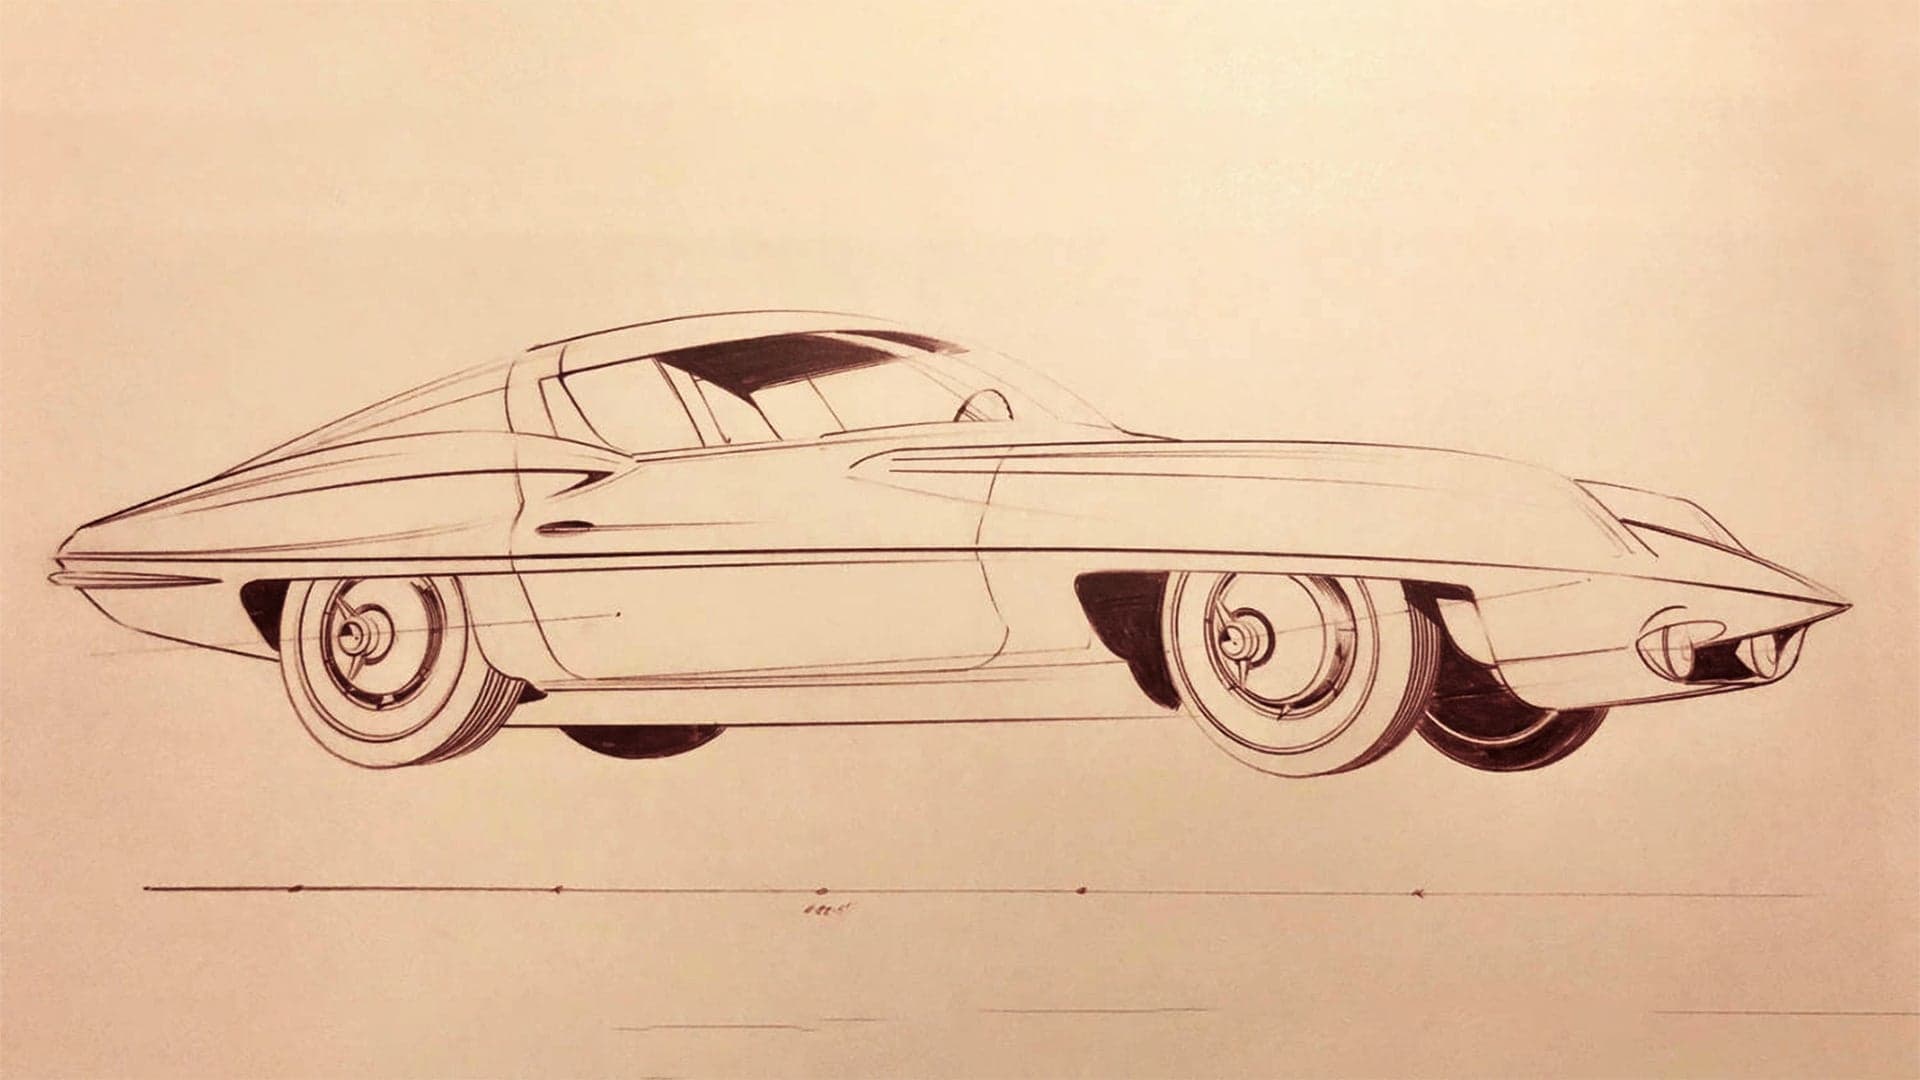 Unfinished Business: Design Legend Pete Brock on Bringing His C2 Corvette Vision Back as an EV